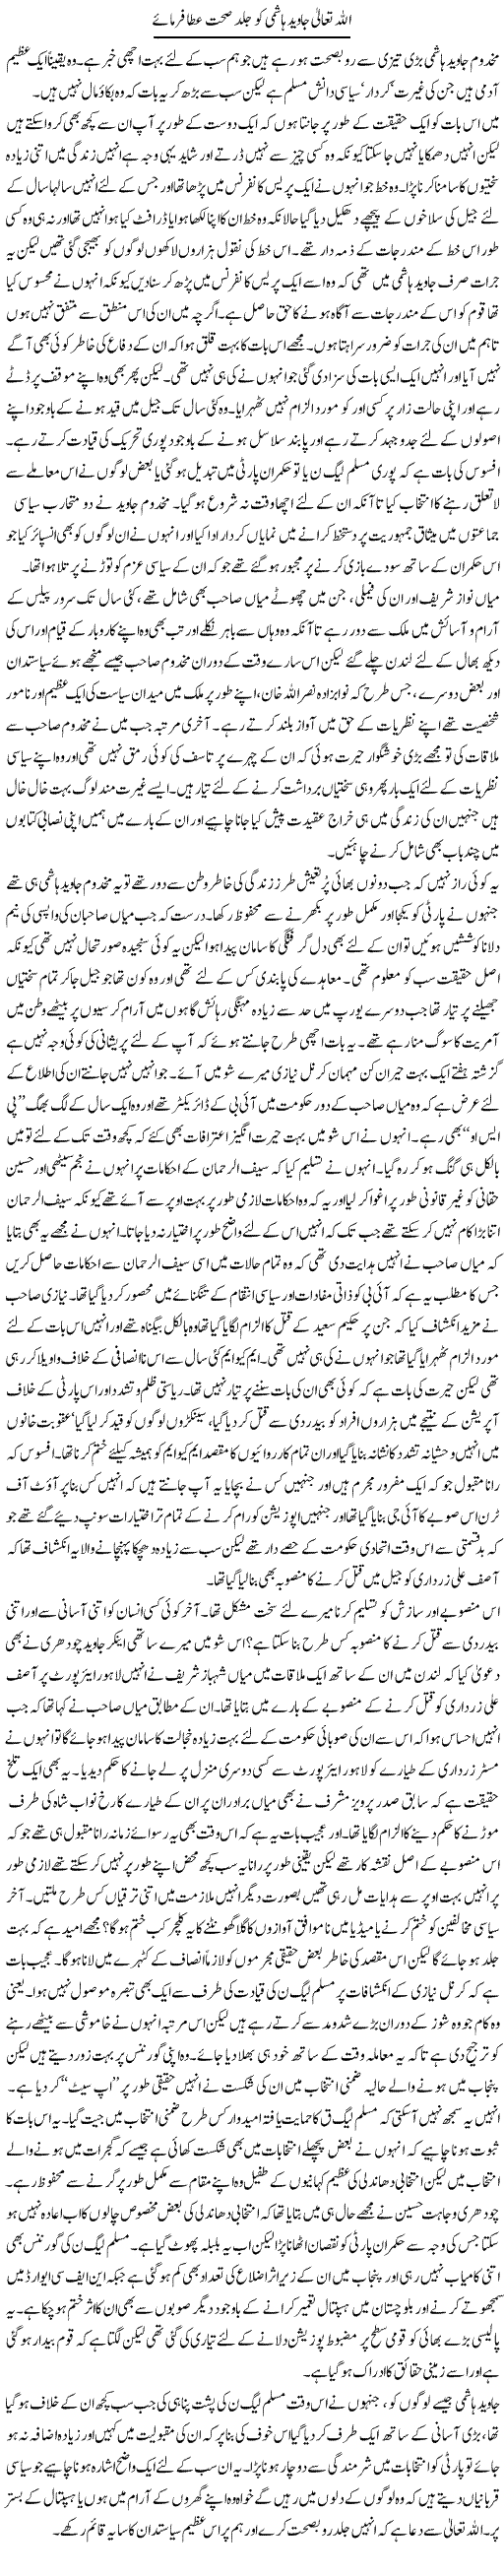 Javed Hashmi Ki Sehat Express Column Mubashir Luqman 30 July 2010